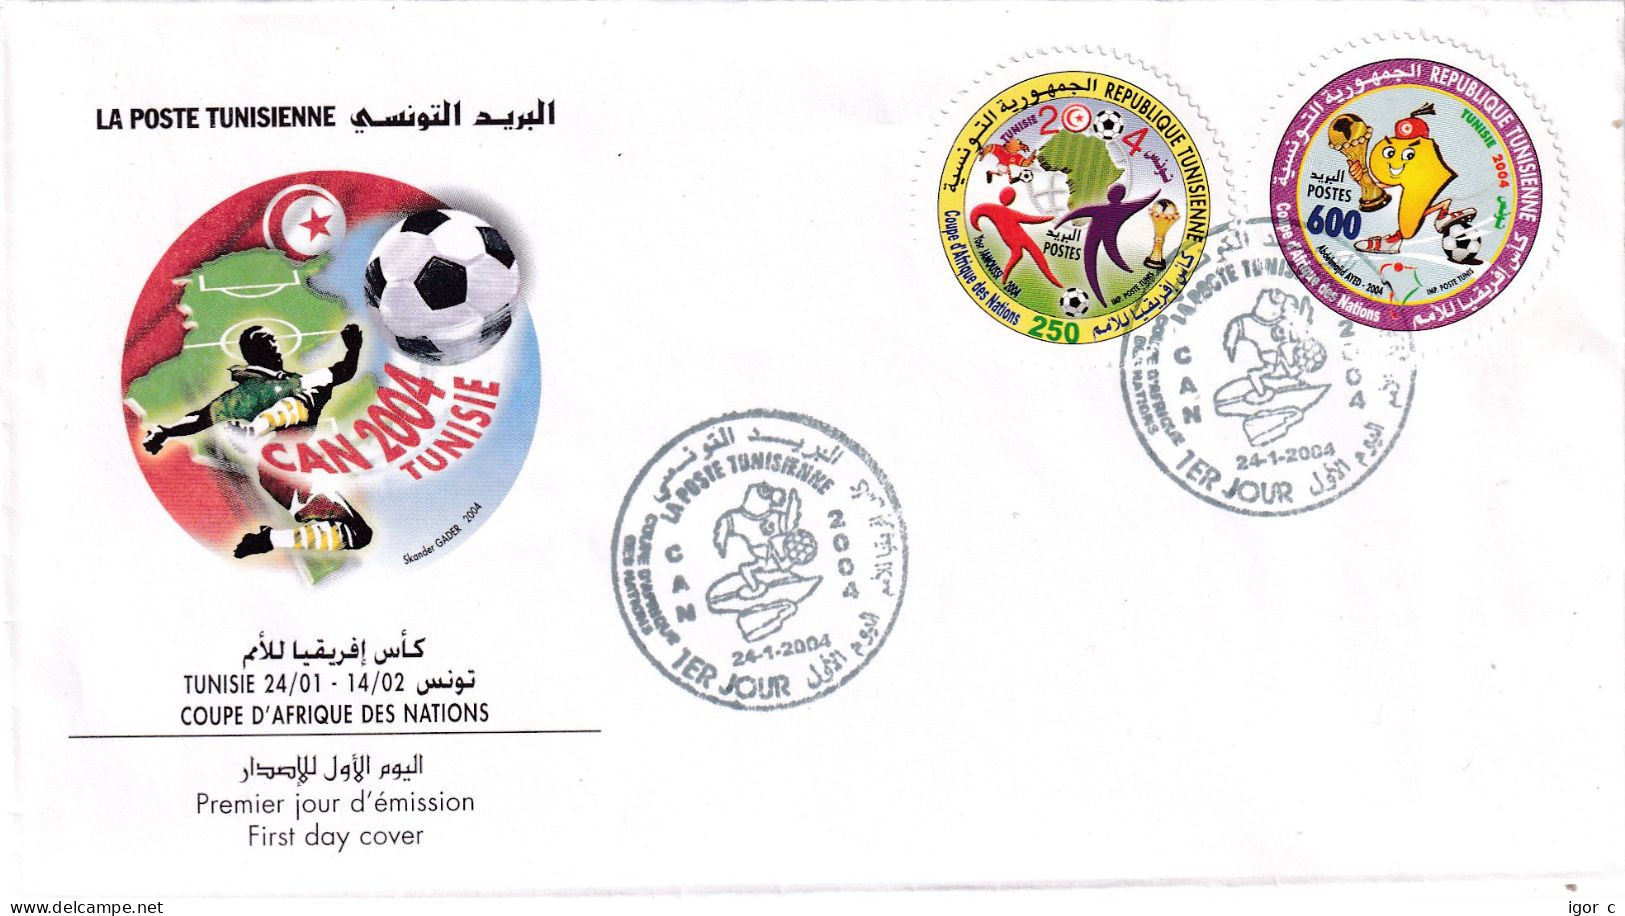 Tunis Tunisia 2004 Cover; Football Fussball Soccer Calcio; Coupe D'Afrique Des Nations - Coppa Delle Nazioni Africane